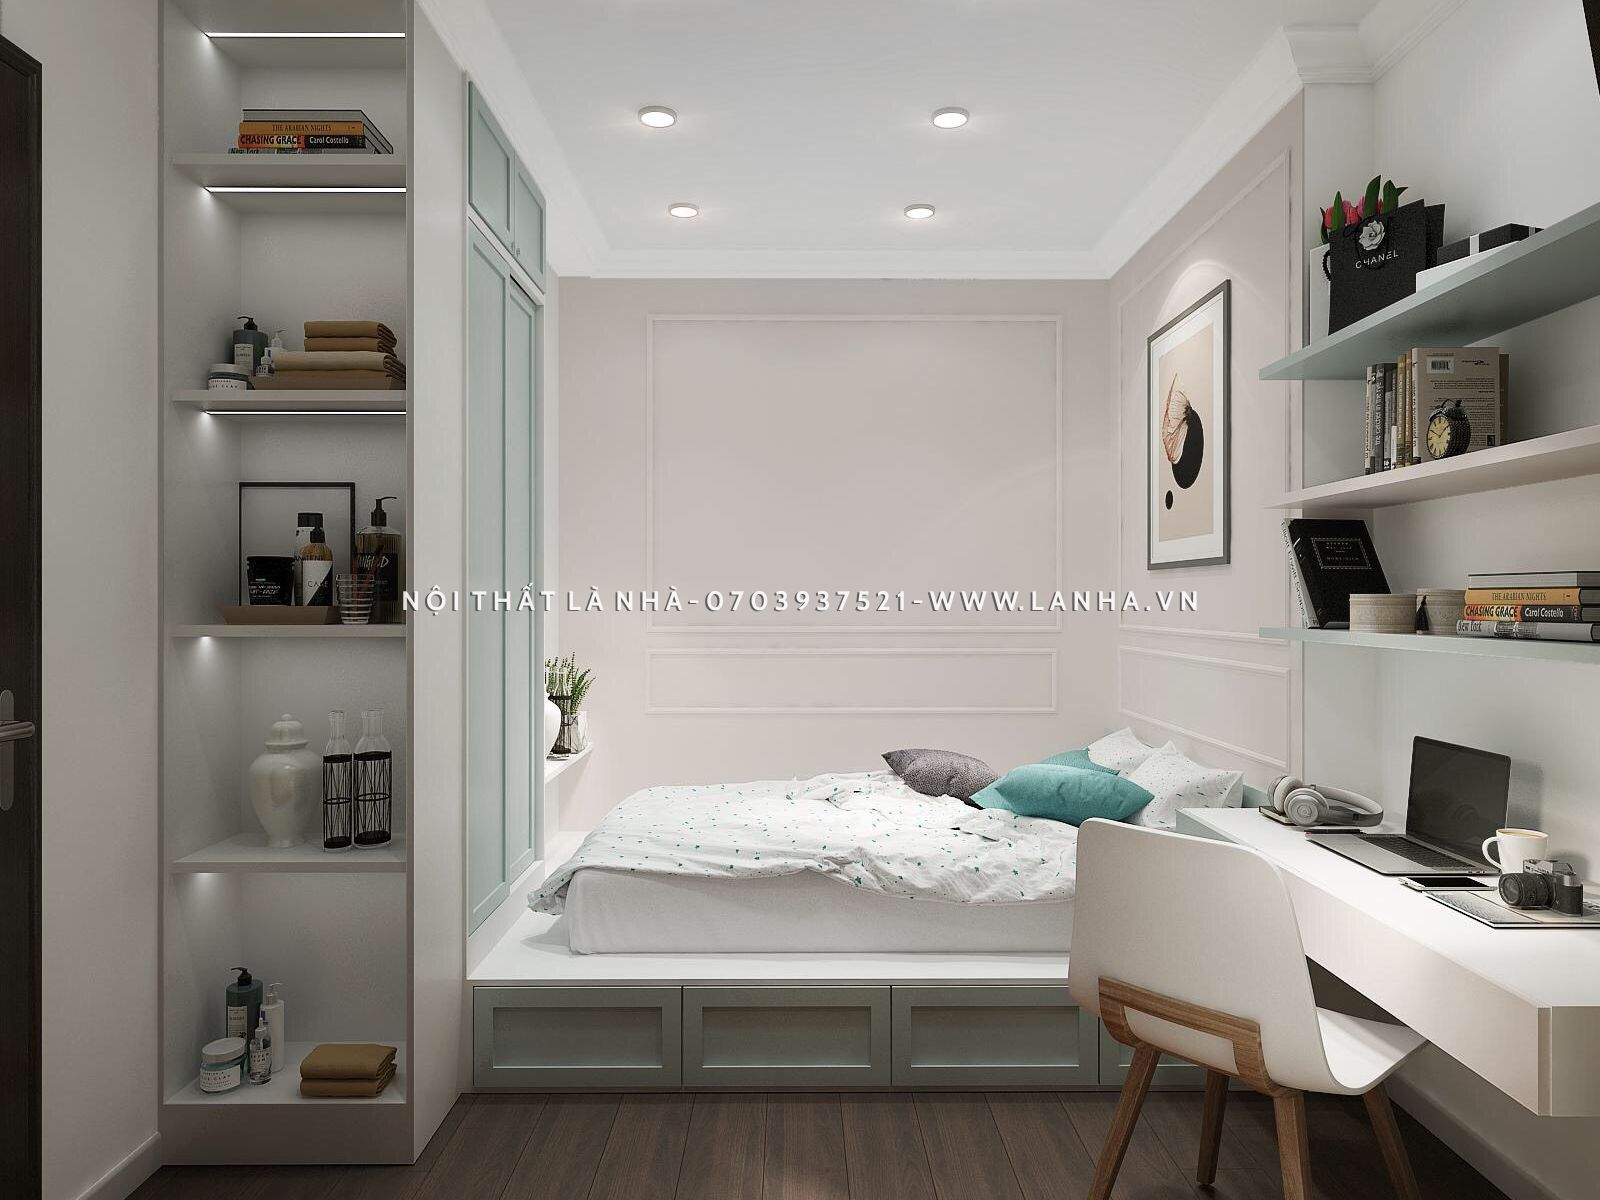 Phòng ngủ nhỏ được bố trí nội thất hợp lý tạo sự rộng rãi, thông thoáng